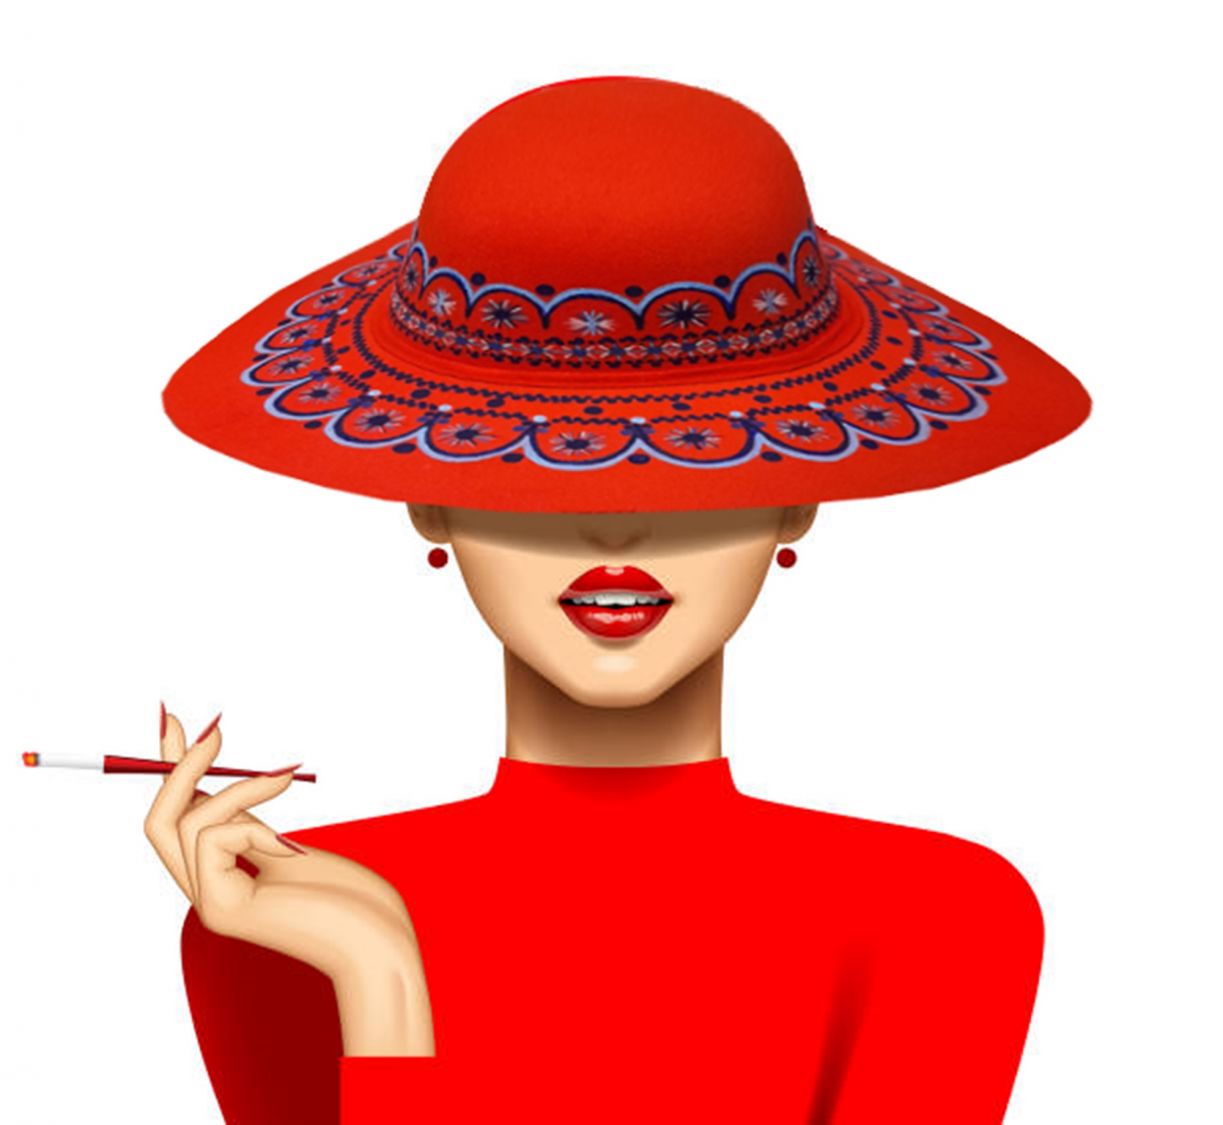 Joli chapeau feutre entièrement peint à la main "Rouge baiser"